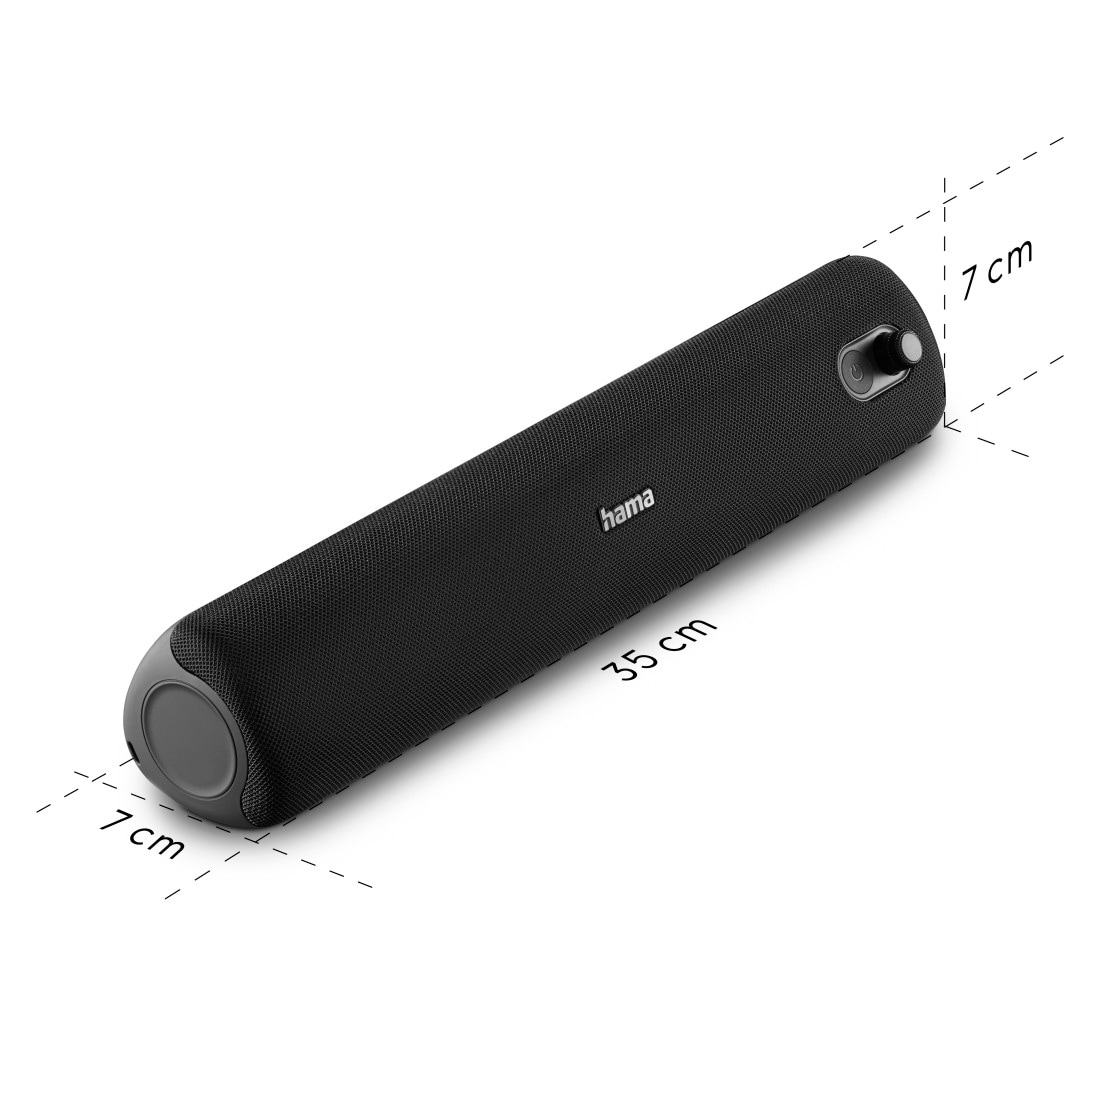 Hama Bluetooth-Lautsprecher »Bluetooth Lautsprecher (wasserdicht IPX5, mit Bass, 20W, 12h Laufzeit)«, Stereo Soundbar mit Standfuß